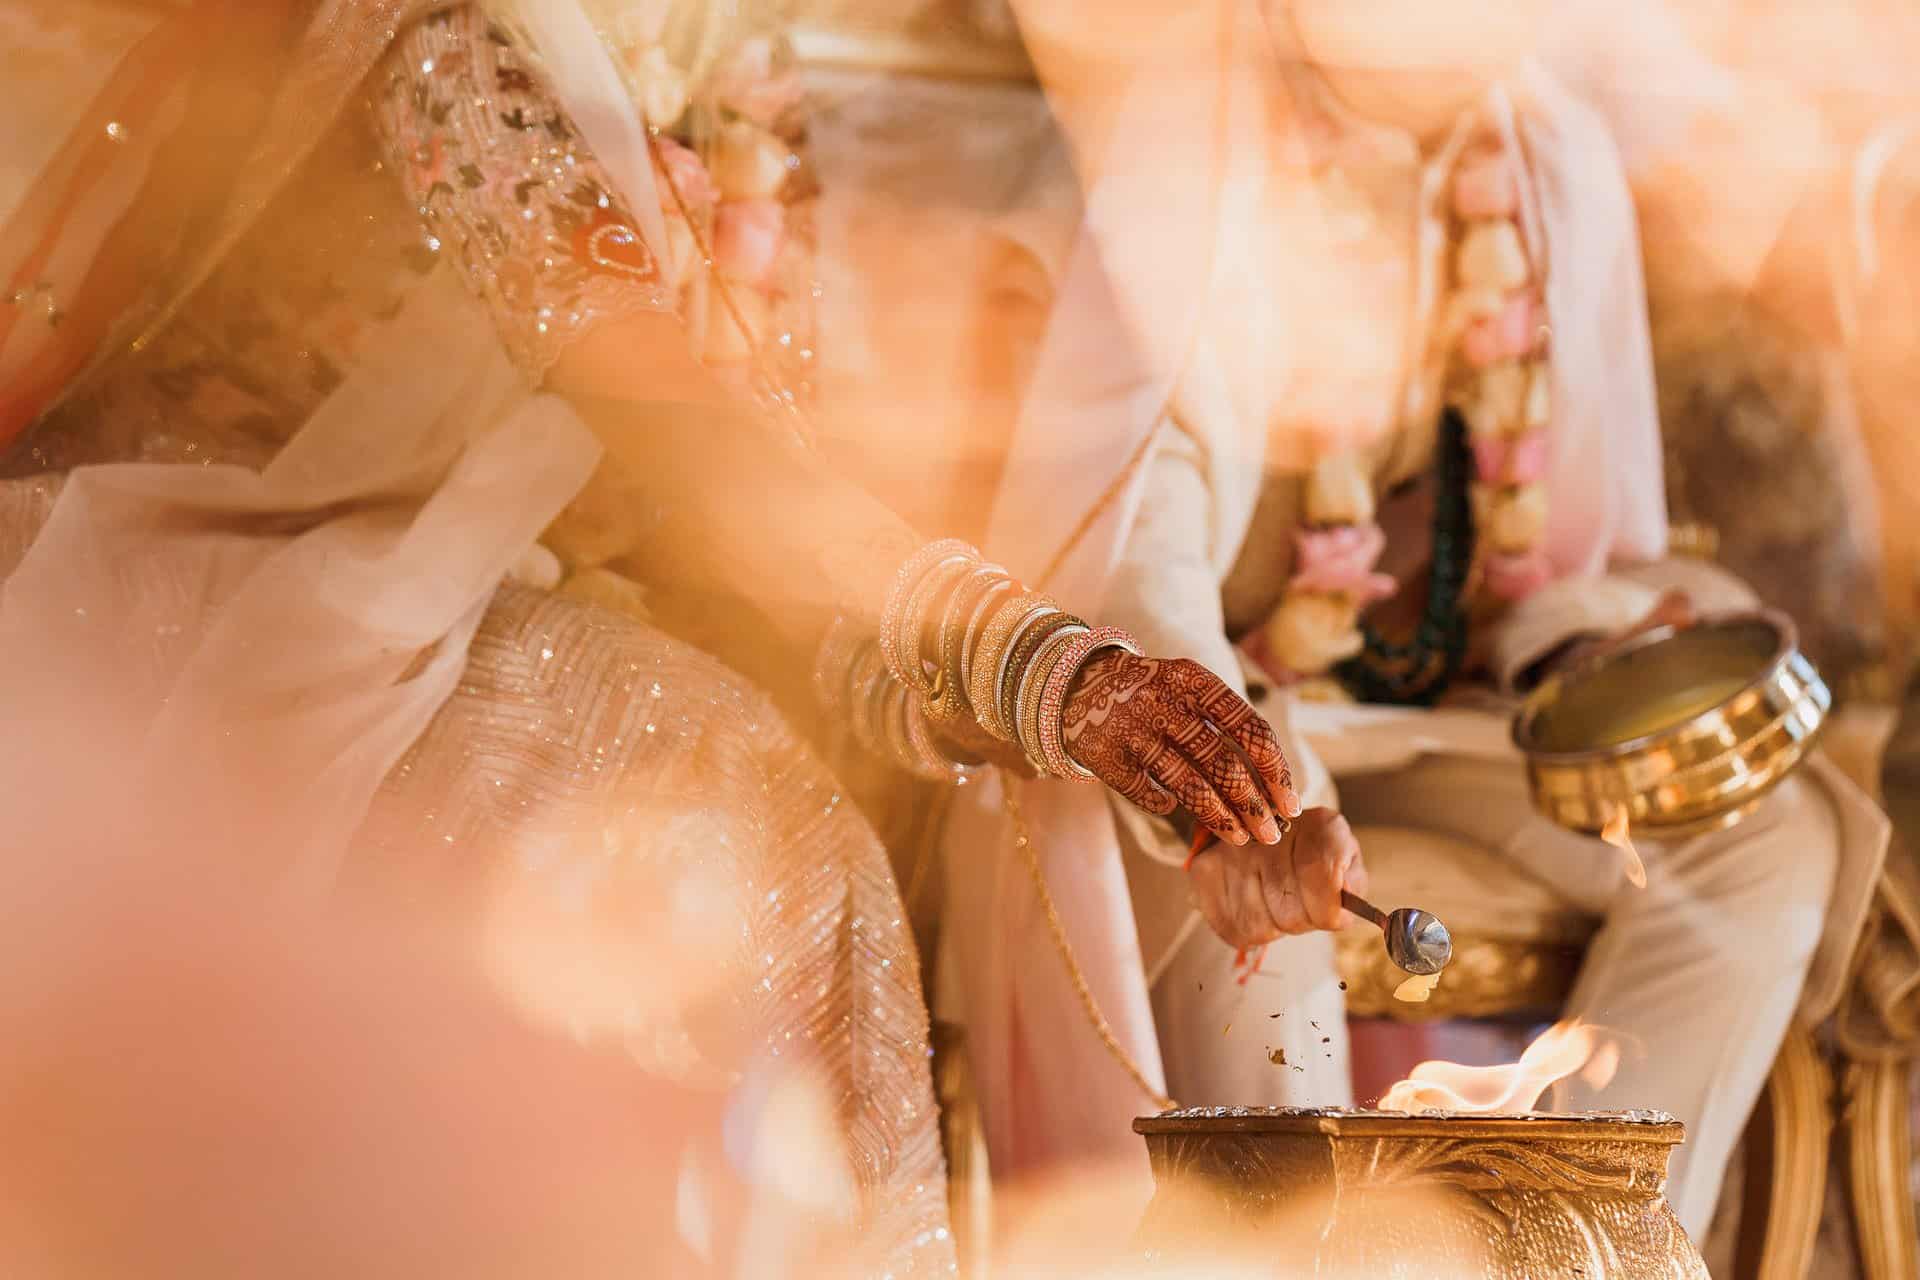 nortbook park indian wedding photography